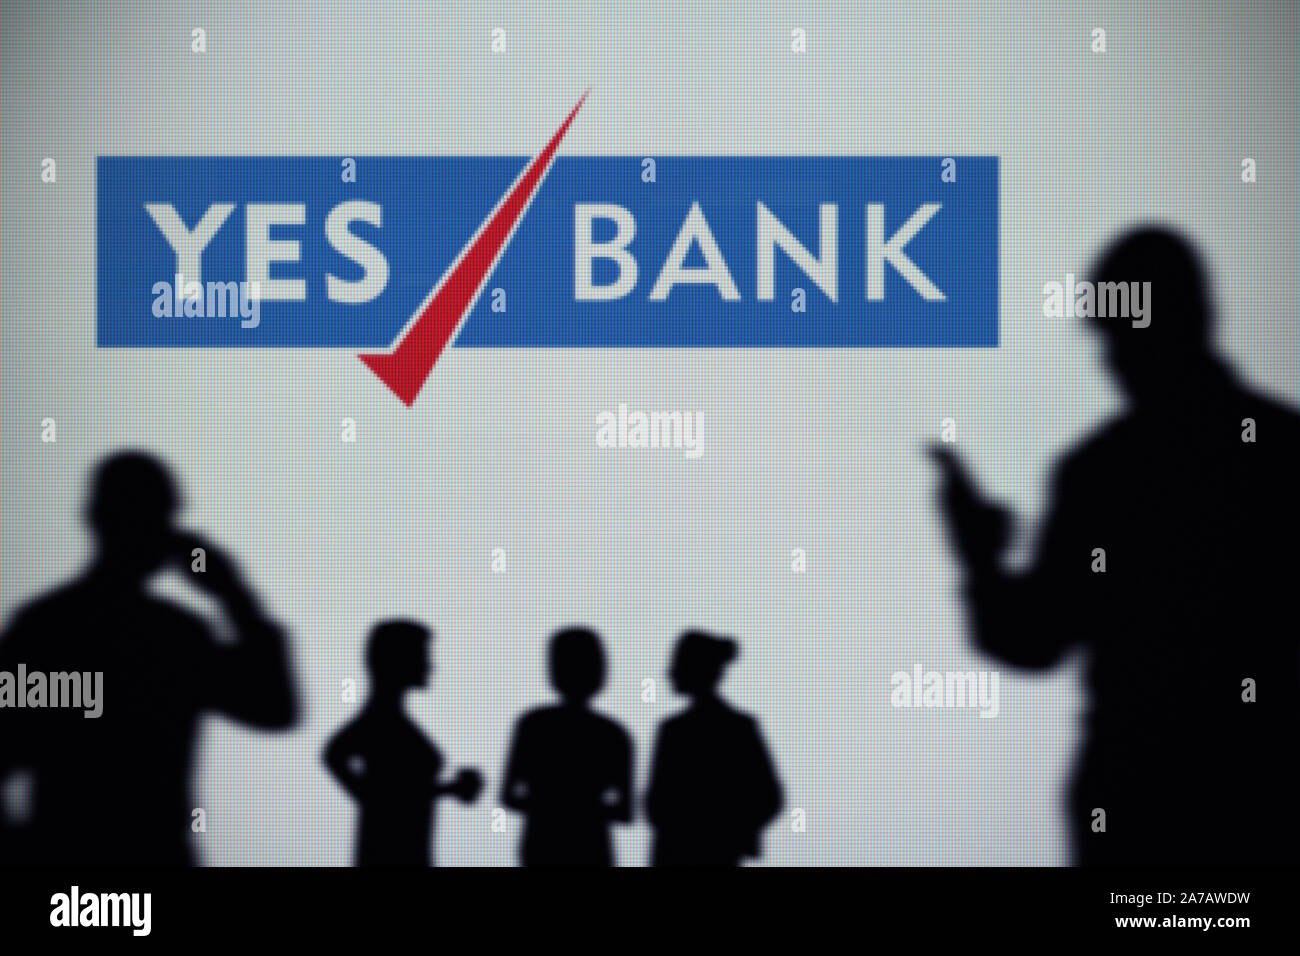 La Banca sì il logo è visibile su uno schermo a LED in background mentre si profila una persona utilizza uno smartphone (solo uso editoriale) Foto Stock